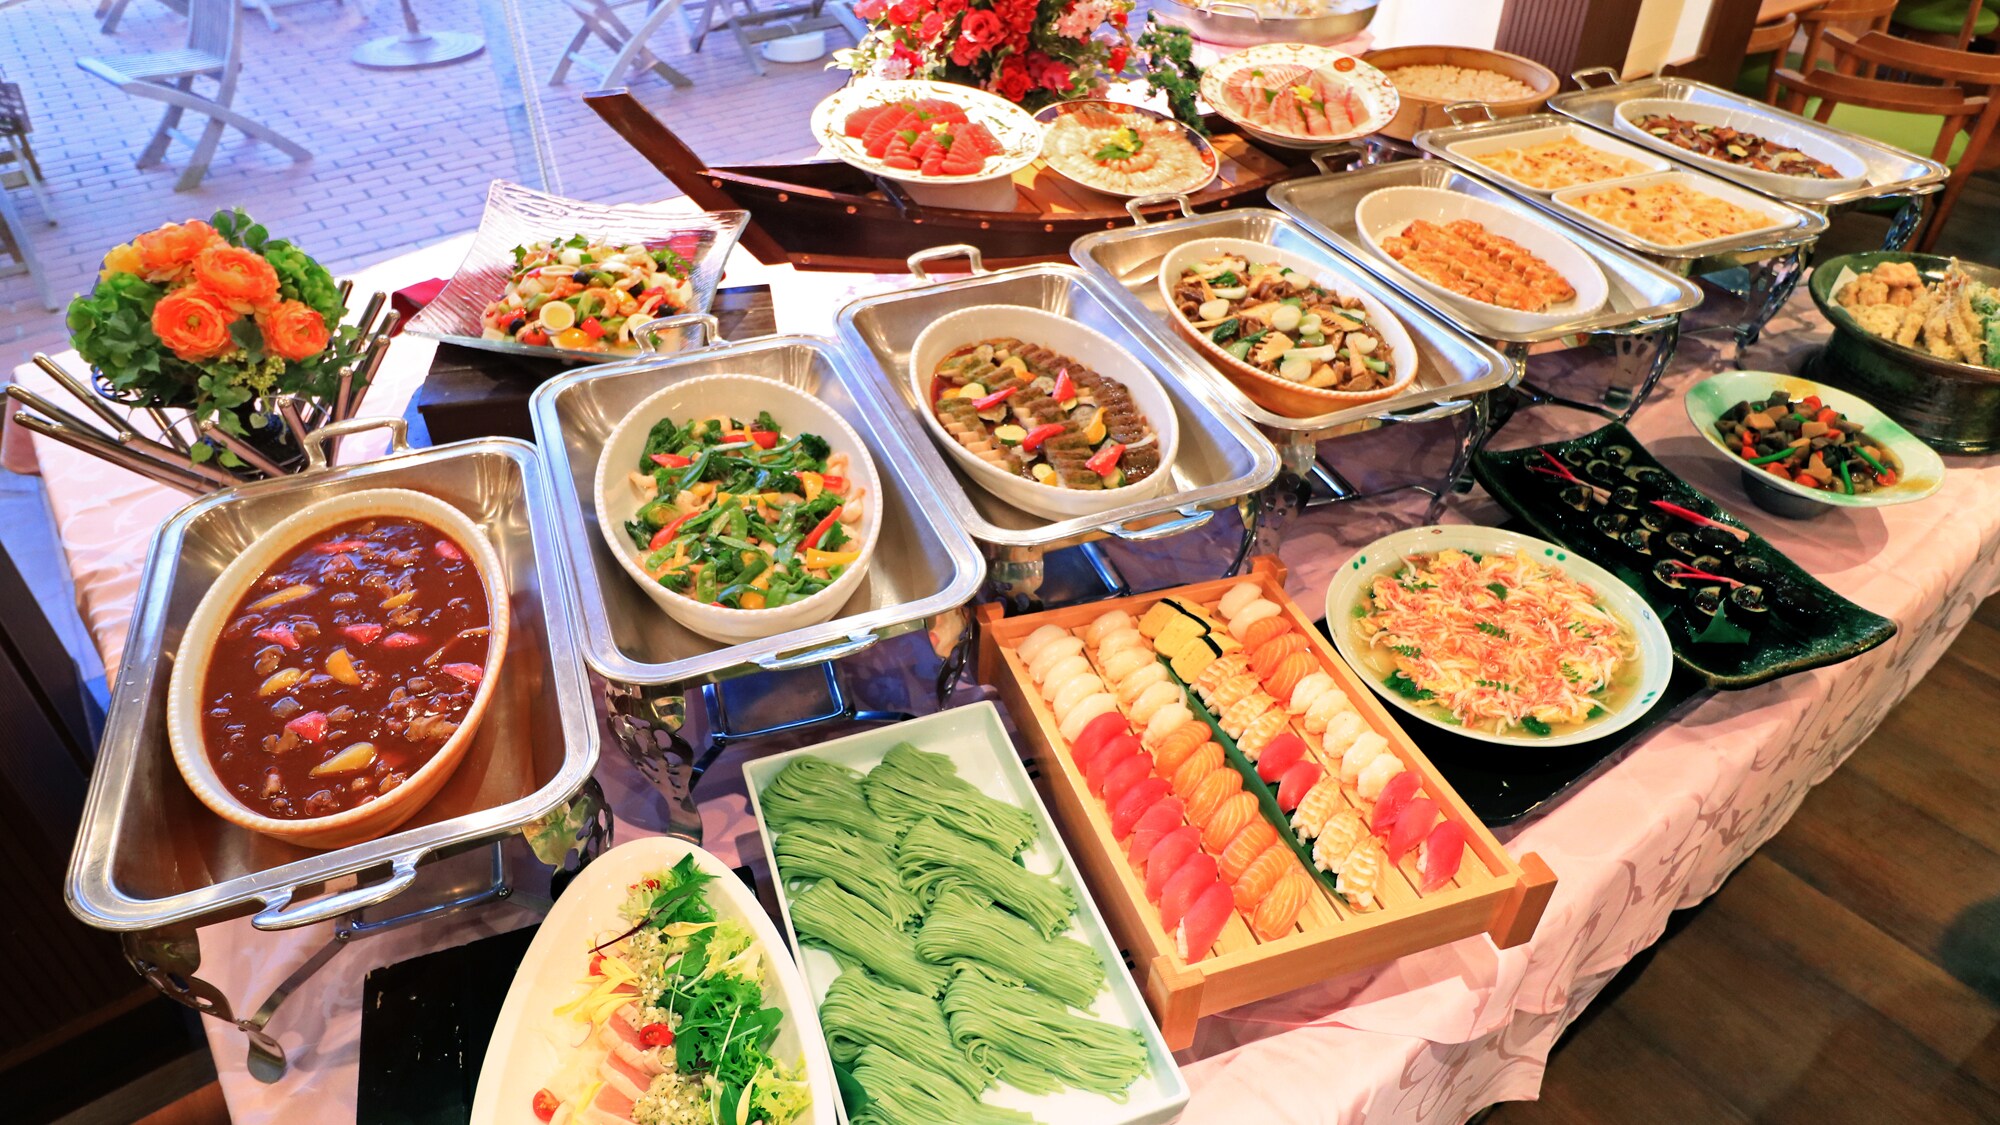 ◆ Supper buffet